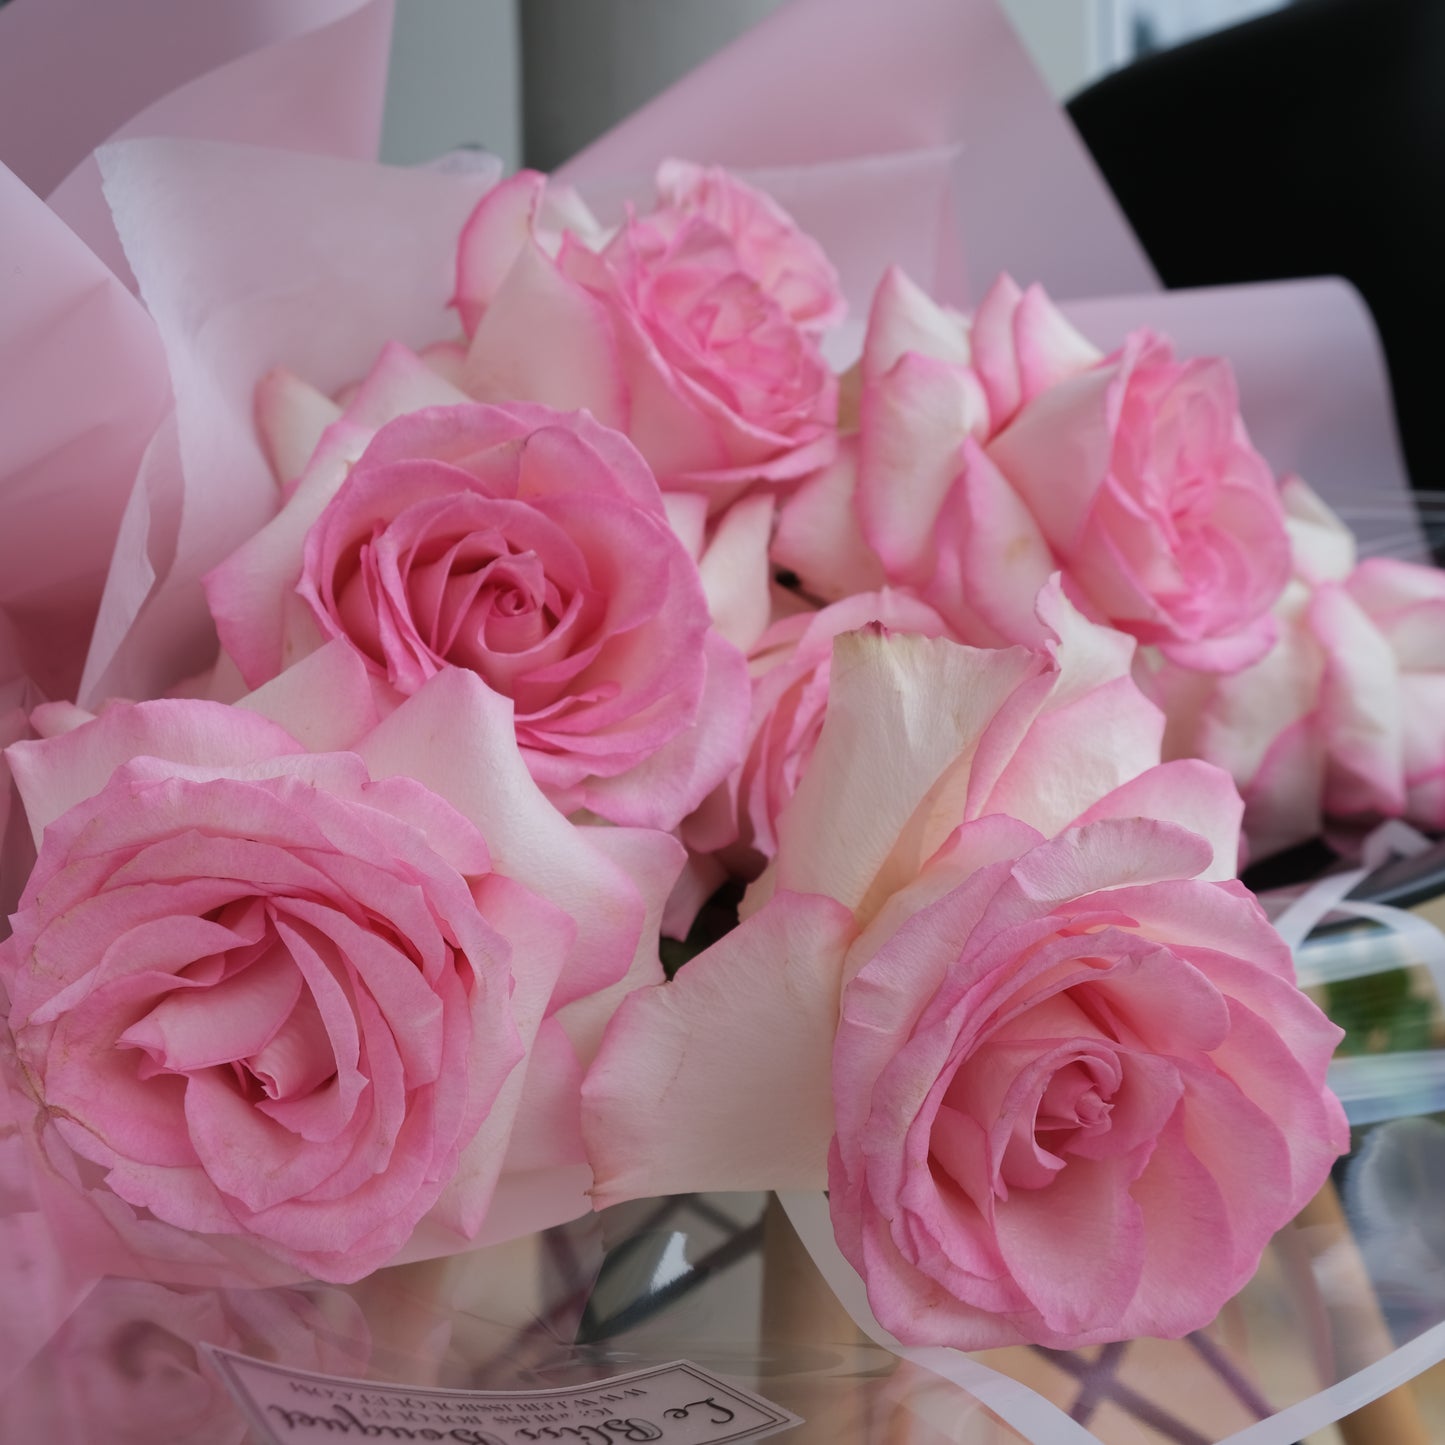 Rose Esperance Bouquet - Le Bliss Bouquet